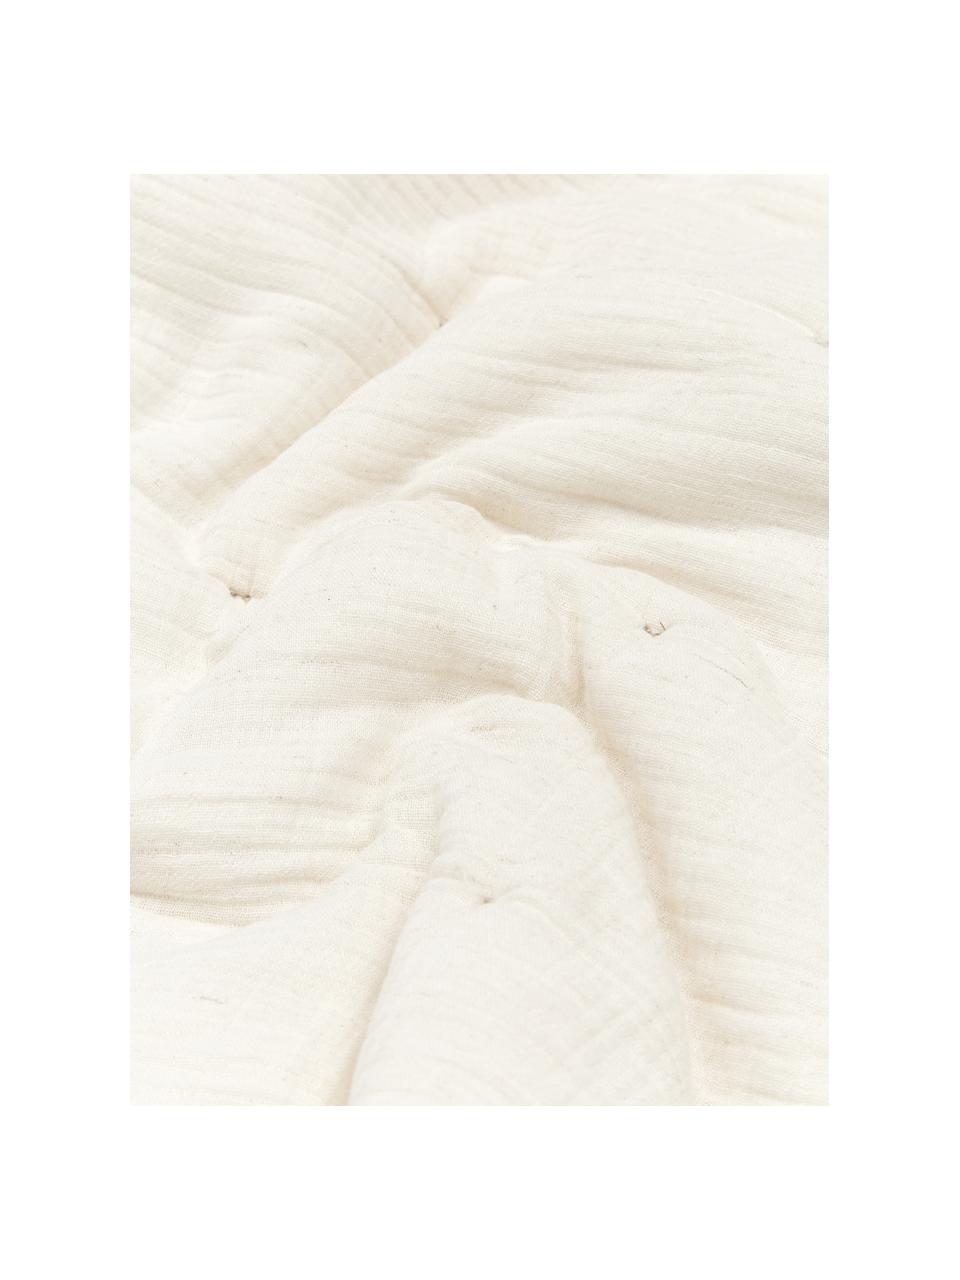 Copriletto trapuntato in mussola di cotone beige Lune, Rivestimento: 100% cotone, Beige, Larg. 260 x Lung. 260 cm (per letti da 160 x 200 cm)